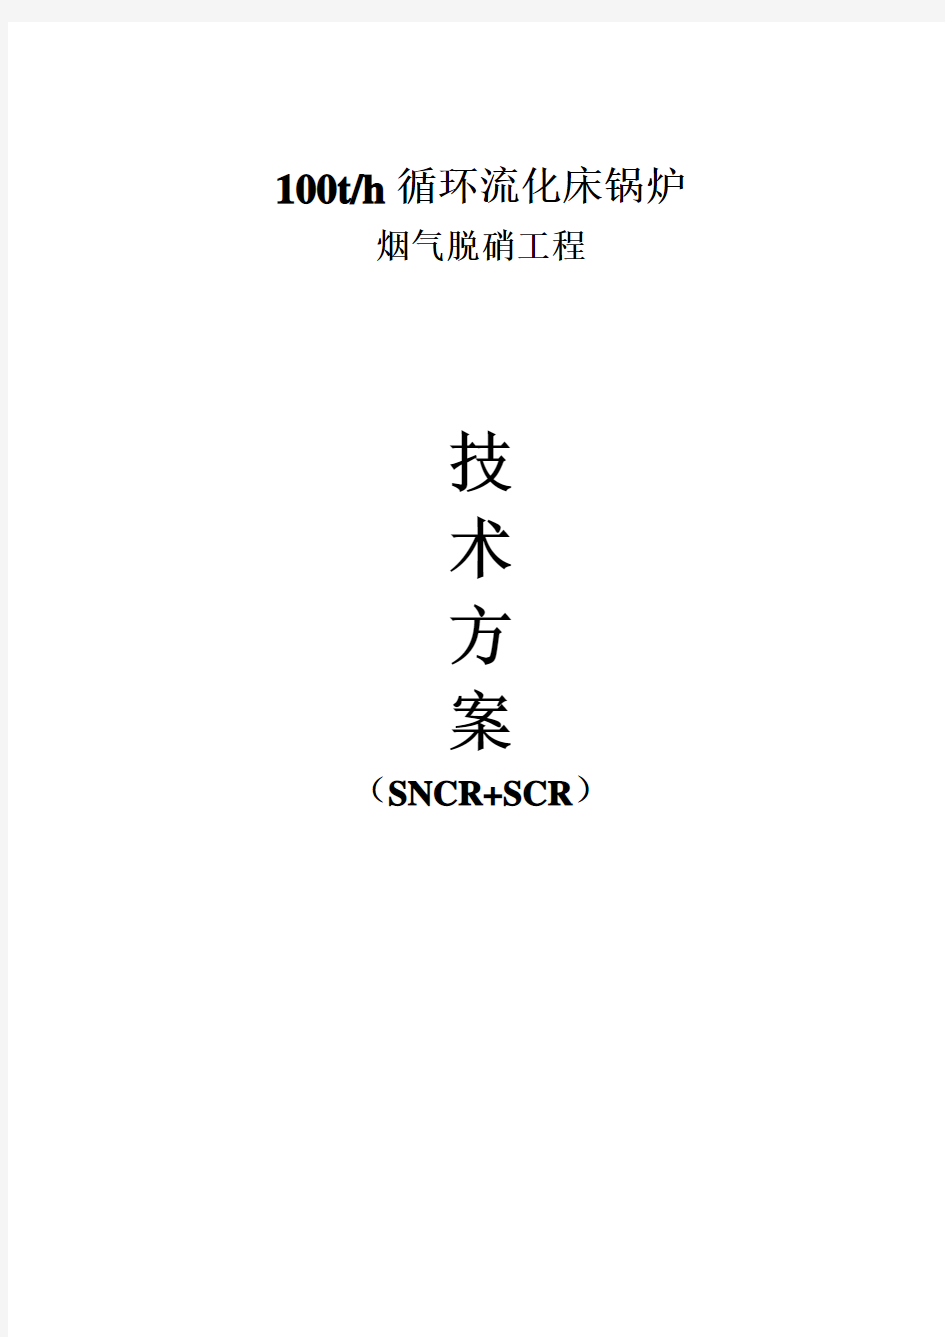 (完整版)SNCR+SCR脱硝方案